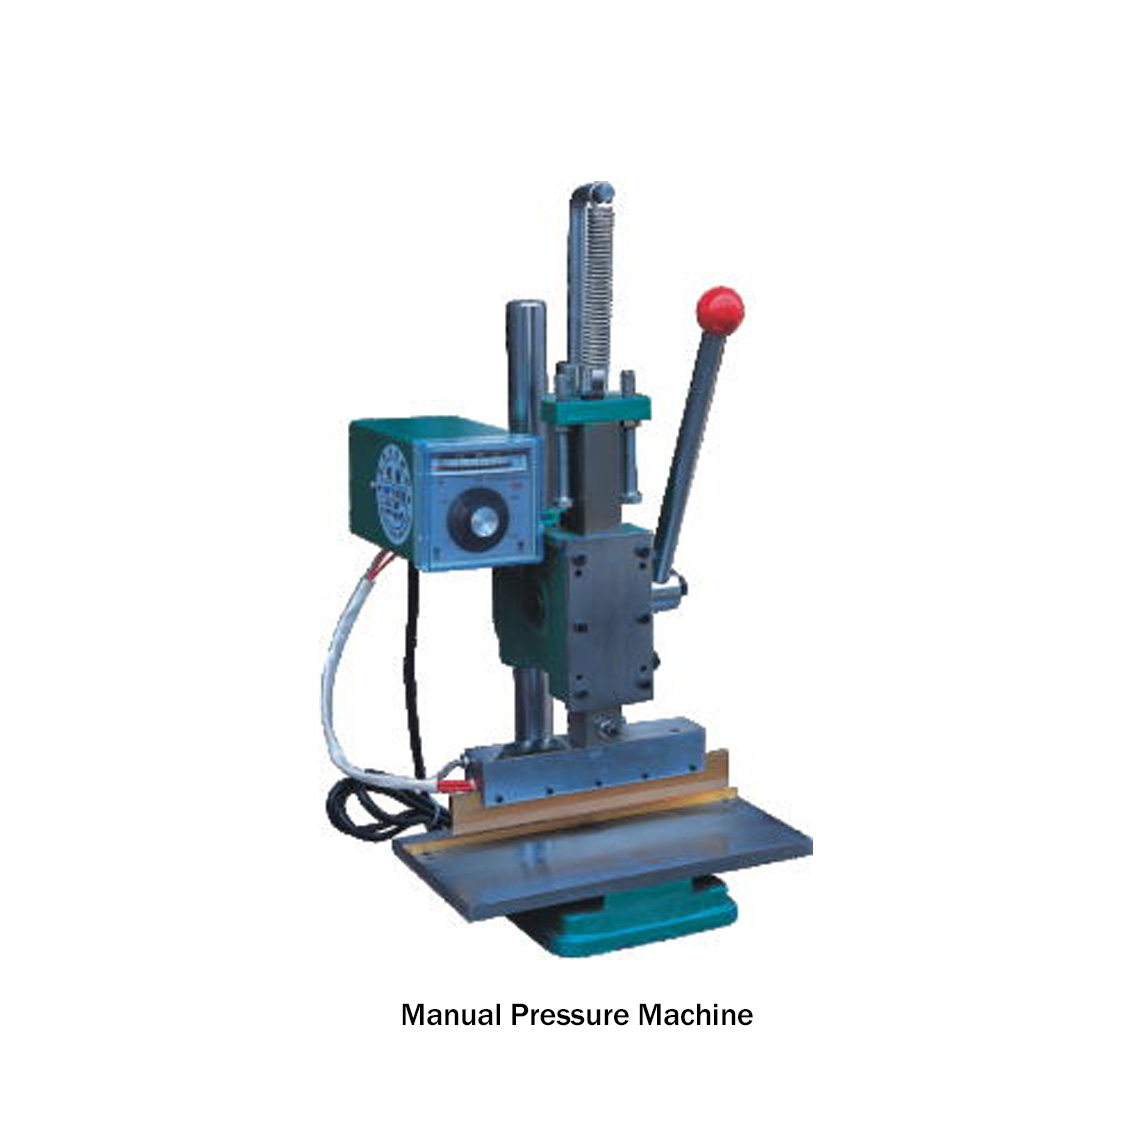 Manual Pressure Machine